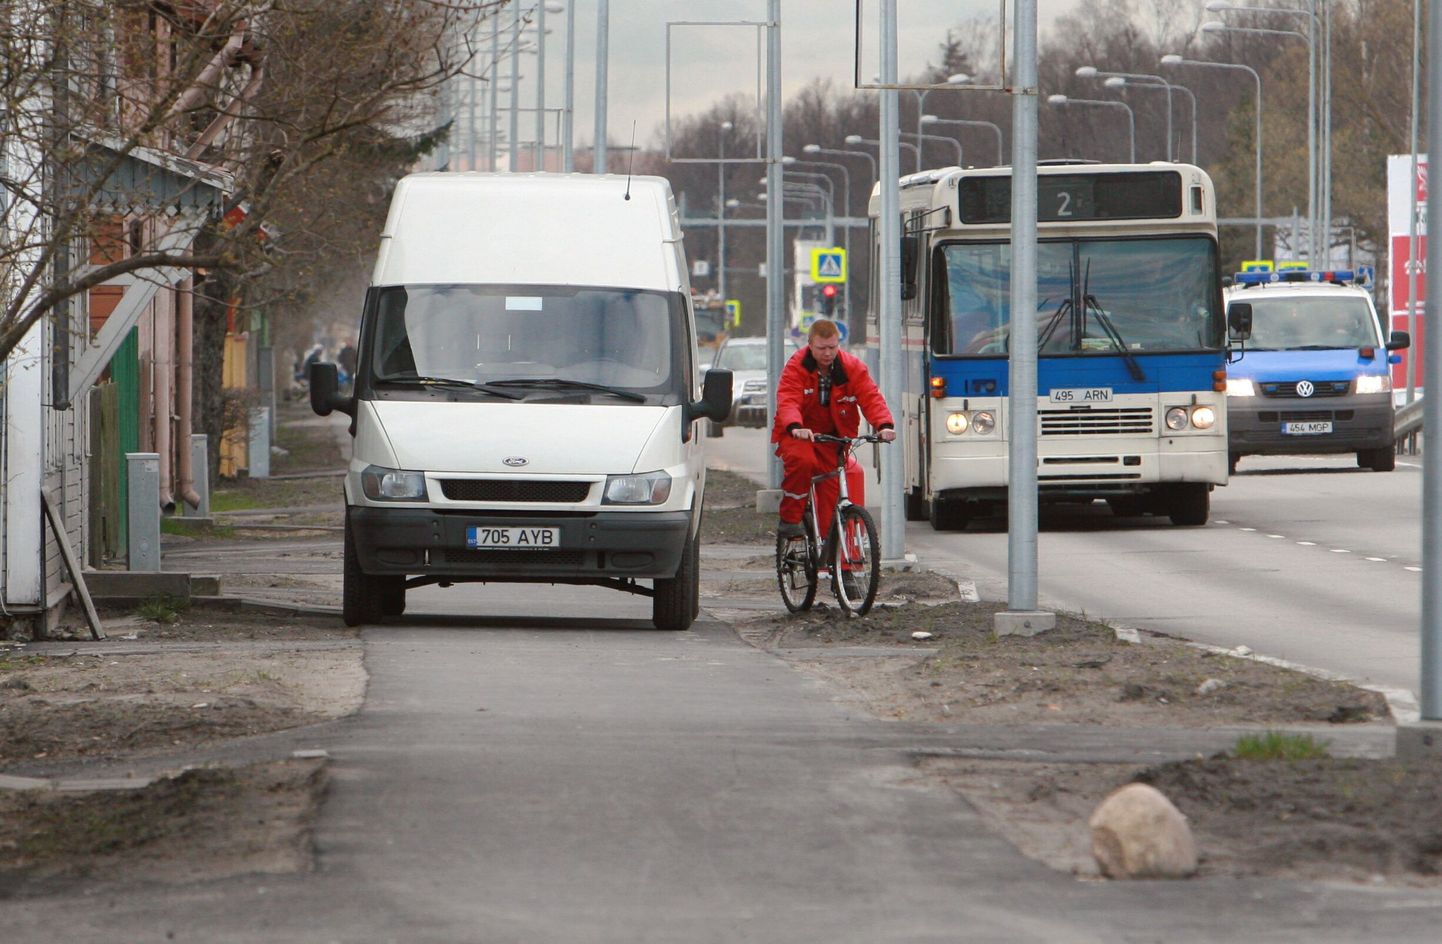 Kõnniteele parkijad segavad liiklejaid ka mujal Eestis. Pildil on kaubabuss kinni parkinud kõnnitee Pärnus.